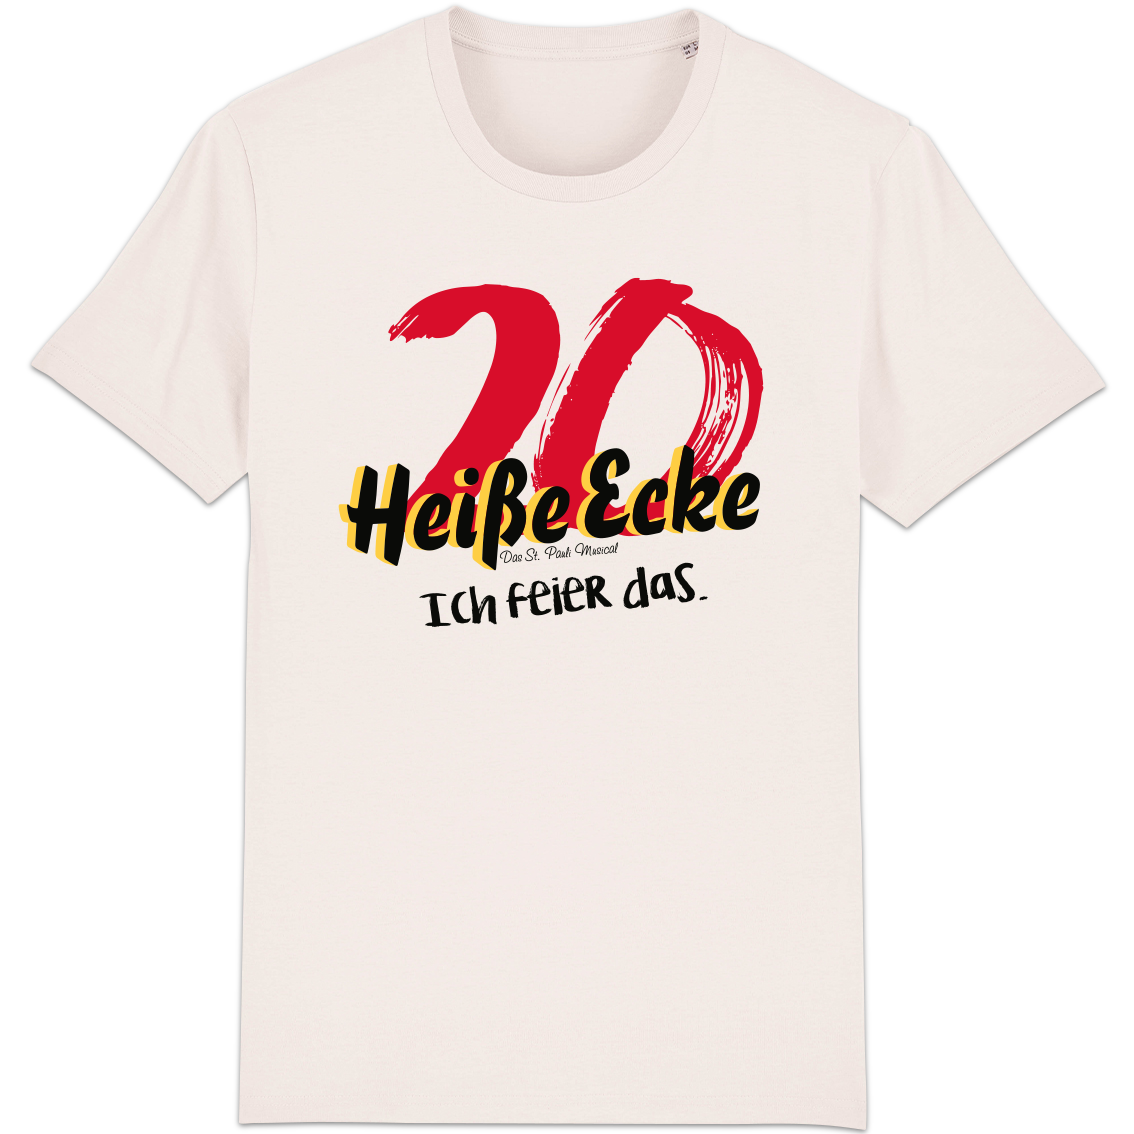 T-Shirt 20 Jahre "Heiße Ecke"